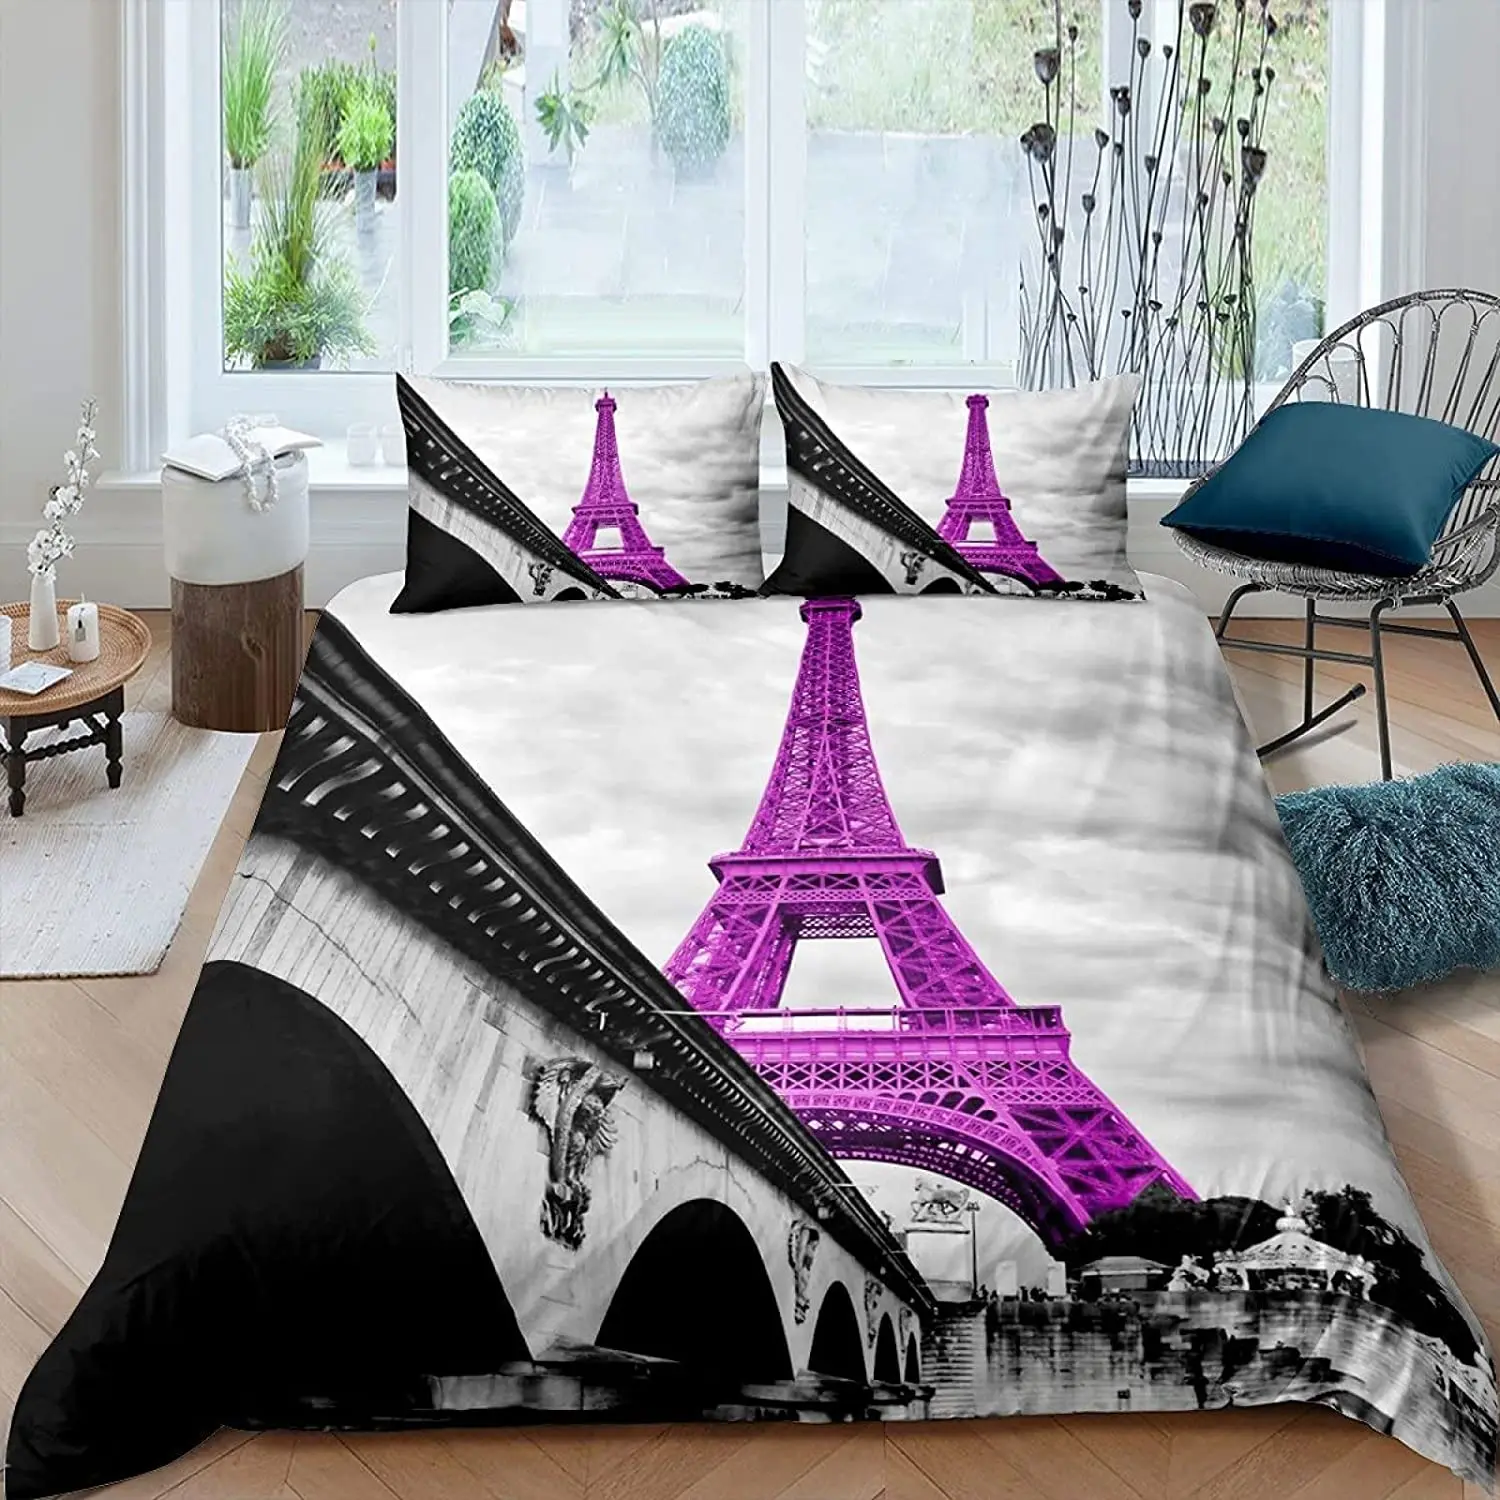 

Paris Duvet Cover Vintage Eiffel Tower Red Umbrella Soft Breathable Paris Bedding Set Microfiber Double Queen King Quilt